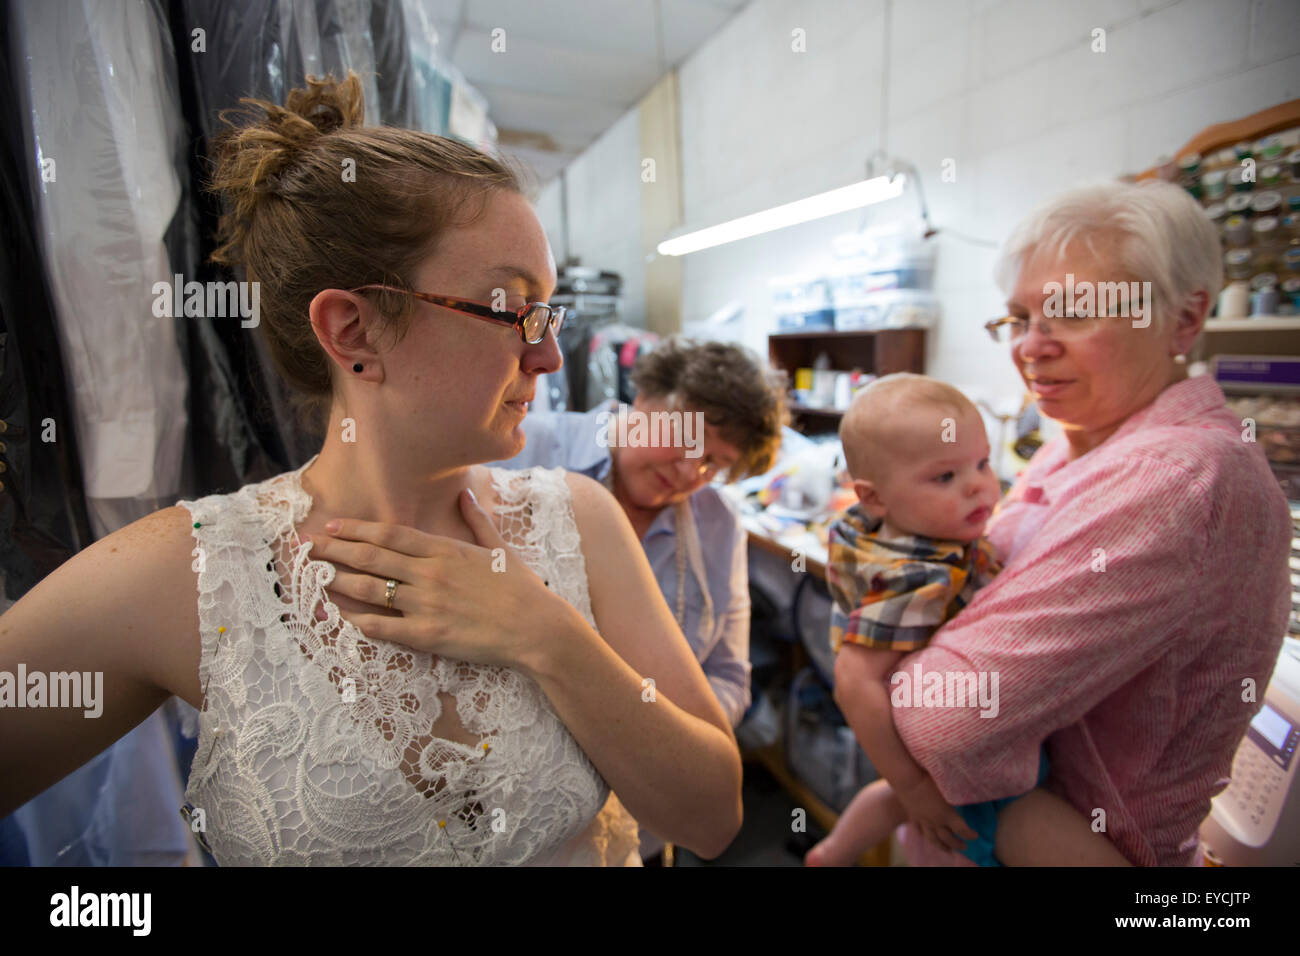 Broomfield, Colorado - una mujer joven está equipado con un vestido de novia, mientras que su madre sostiene a su bebé. Foto de stock